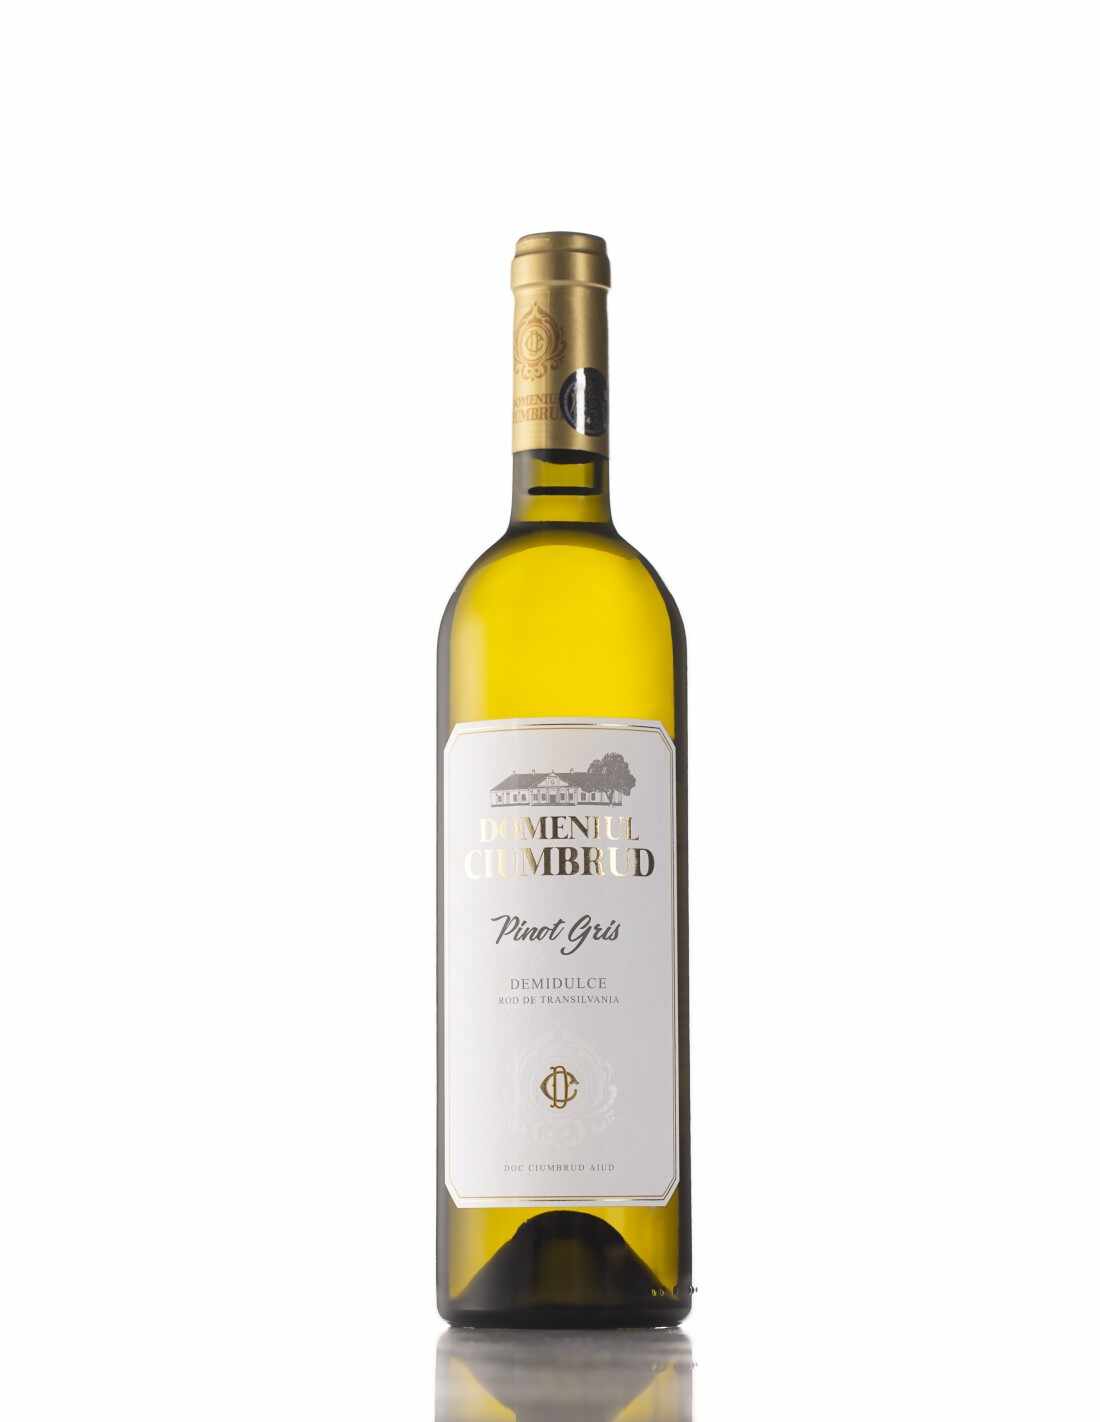 Vin alb demidulce, Pinot Gris, Domeniul Ciumbrud, 12.6% alc., 0.75L, Romania